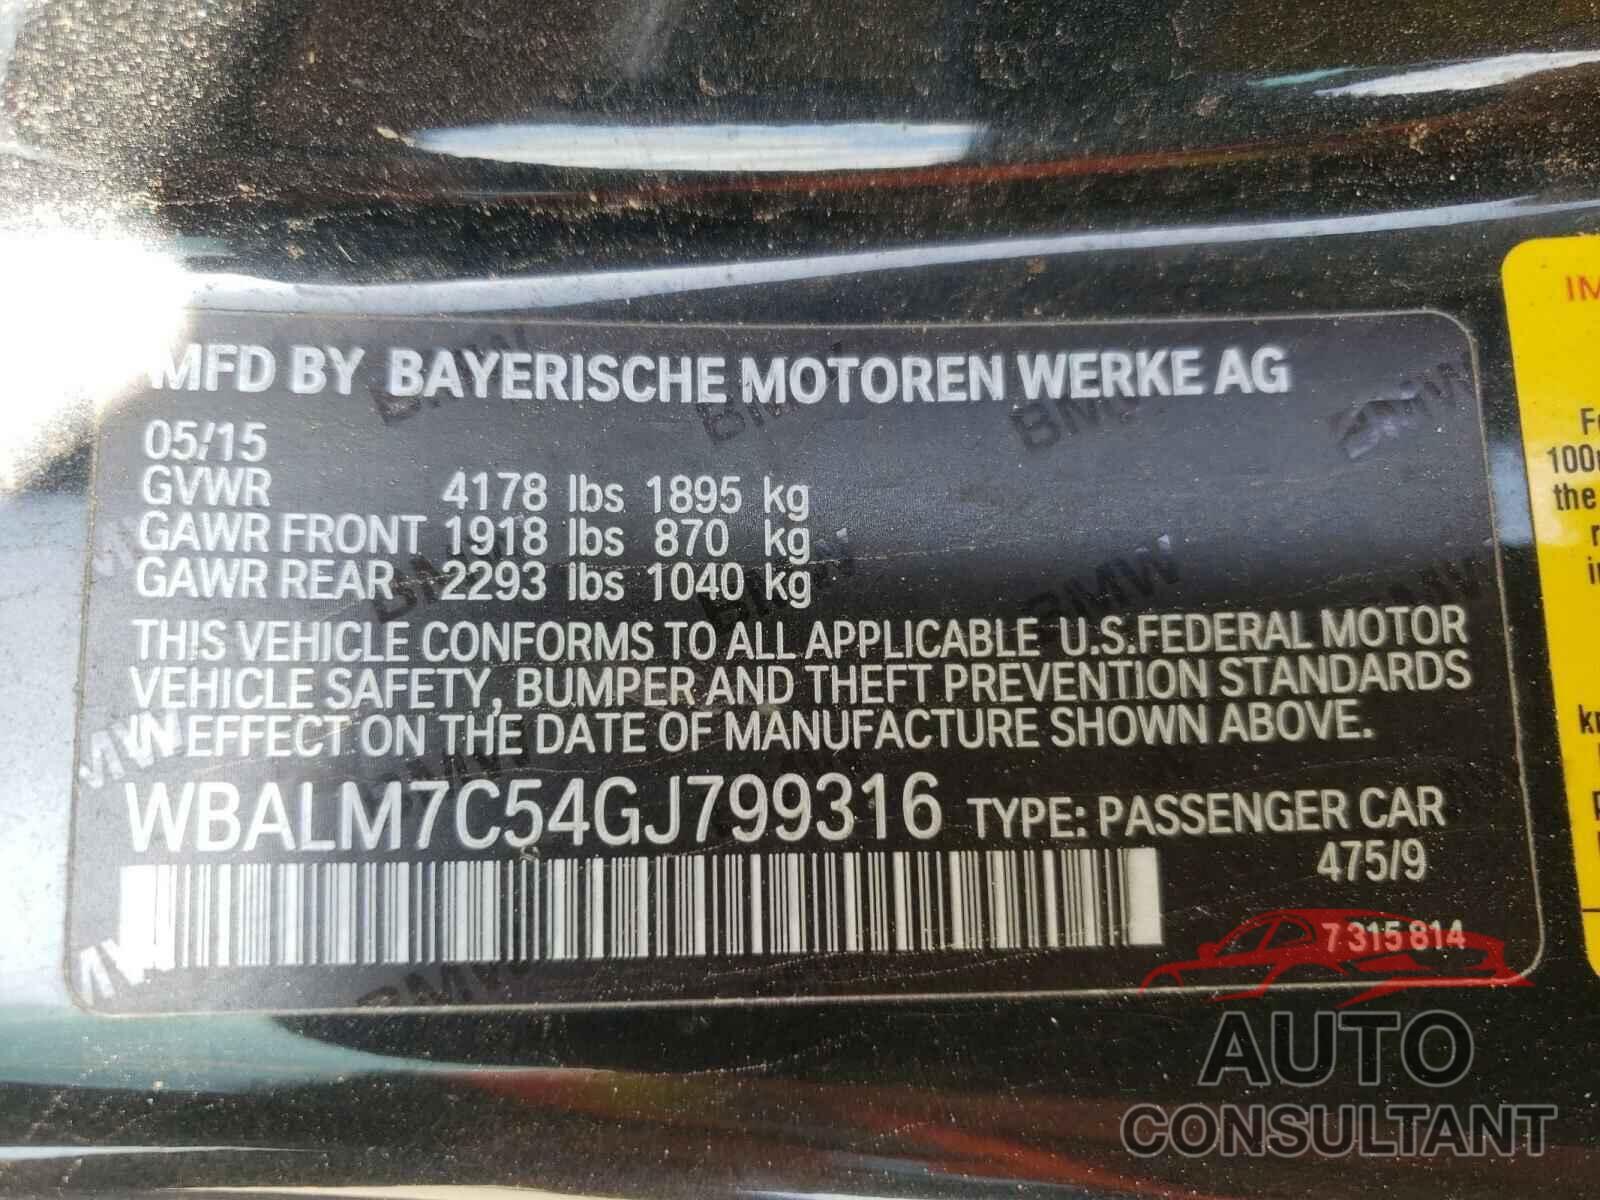 BMW Z4 2016 - WBALM7C54GJ799316